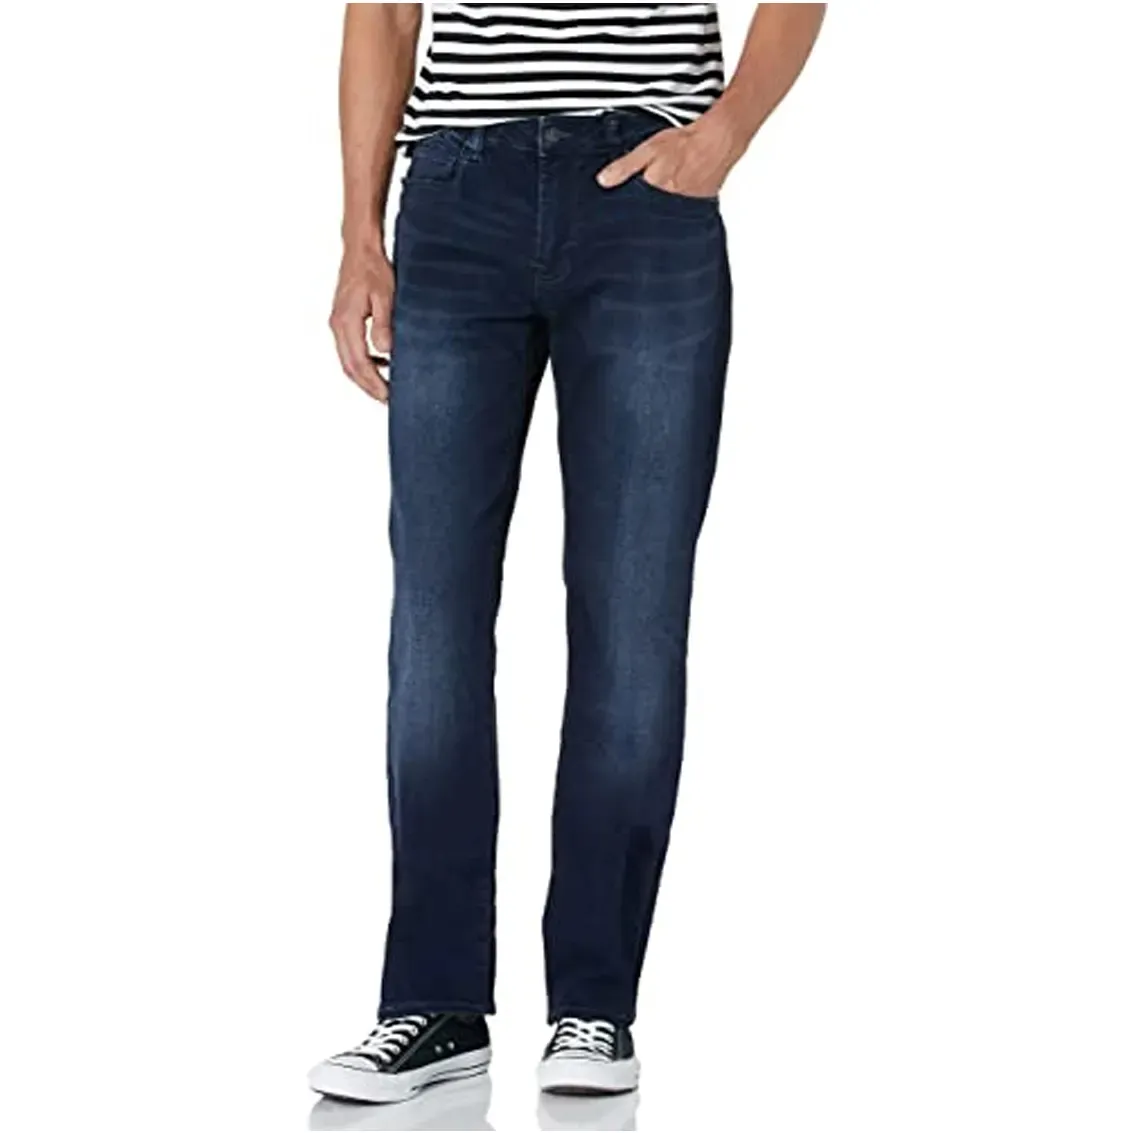 Jeans masculinos rasgados de fábrica de design atacado de alta qualidade jeans personalizados calças jeans lavadas jeans